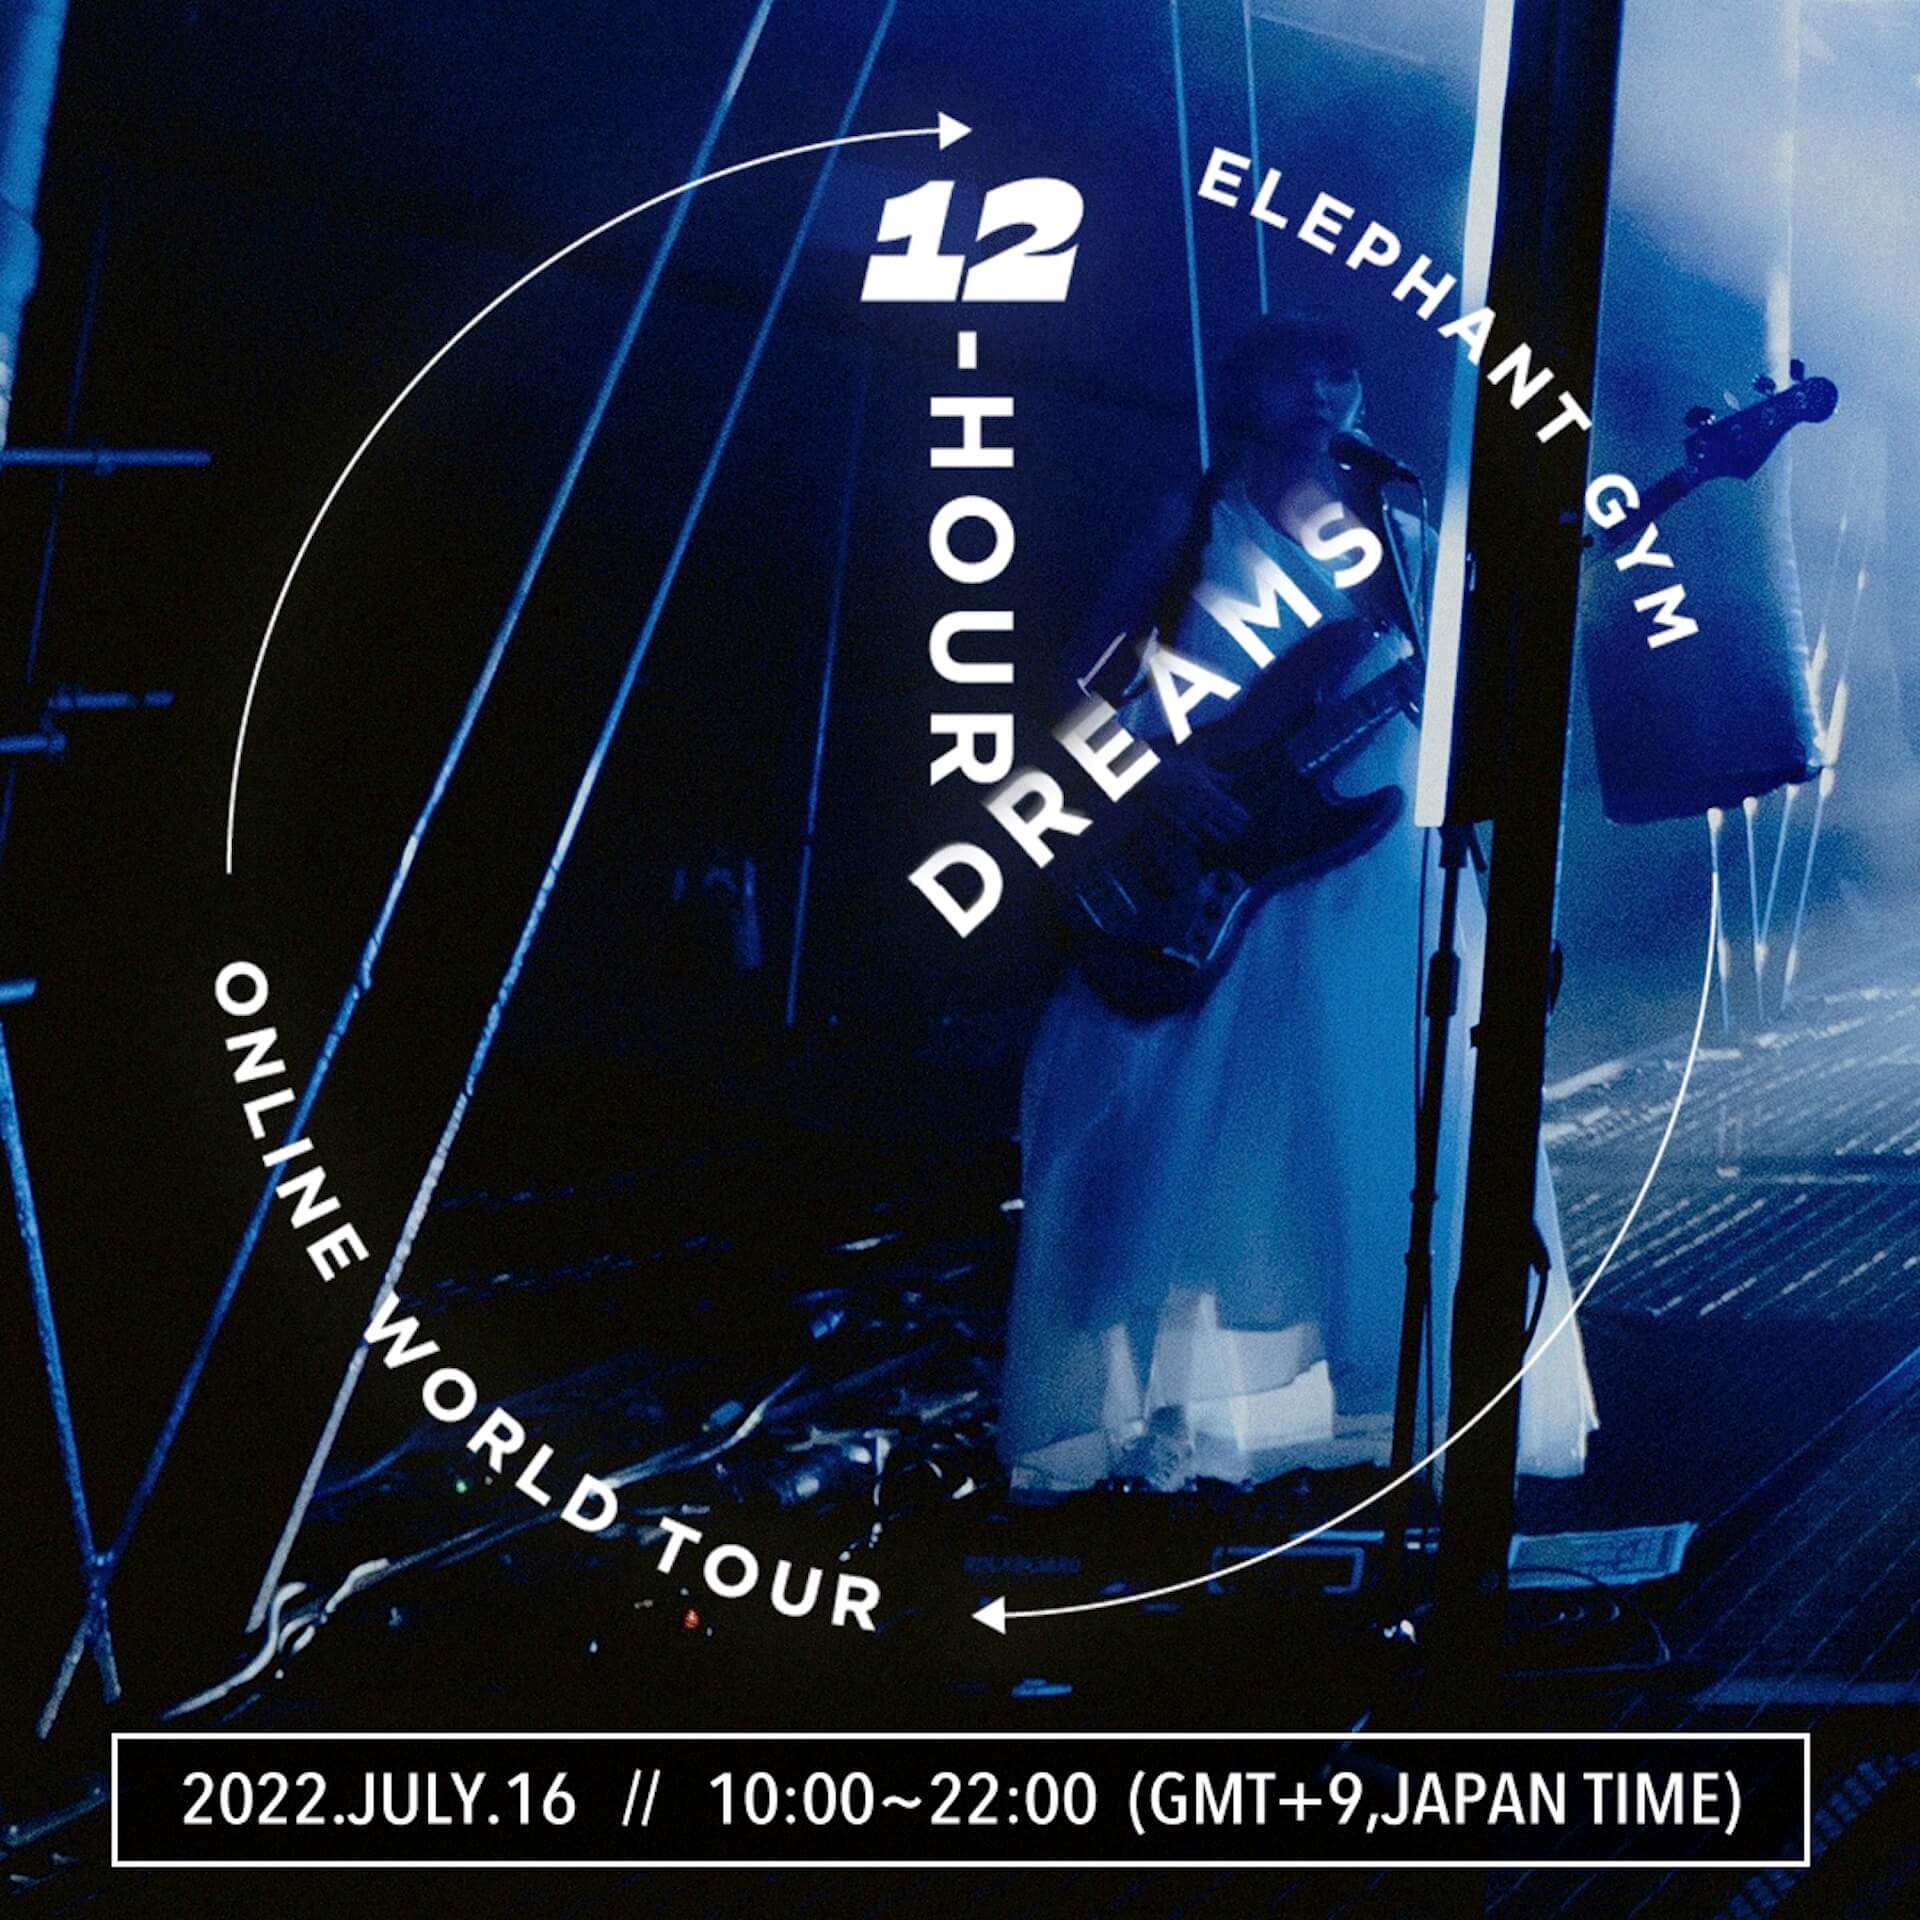 台湾スリーピースバンド・Elephant Gym、12時間におよぶオンラインワールドツアーを開催 music2206230-elephantgym-1